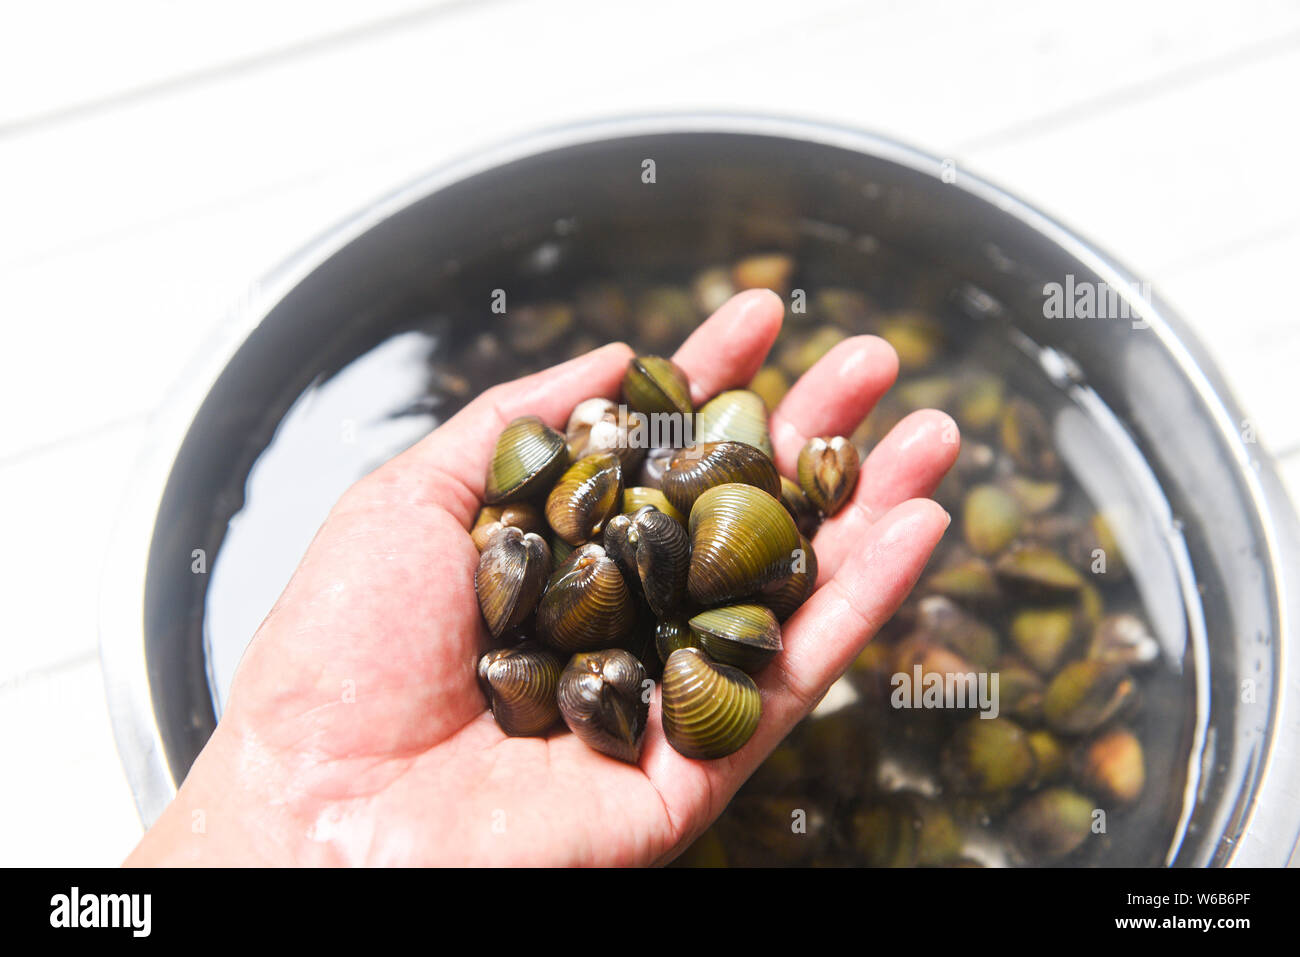 Shijimi marisco bivalvo de agua dulce tales como las almejas shell en mano Foto de stock